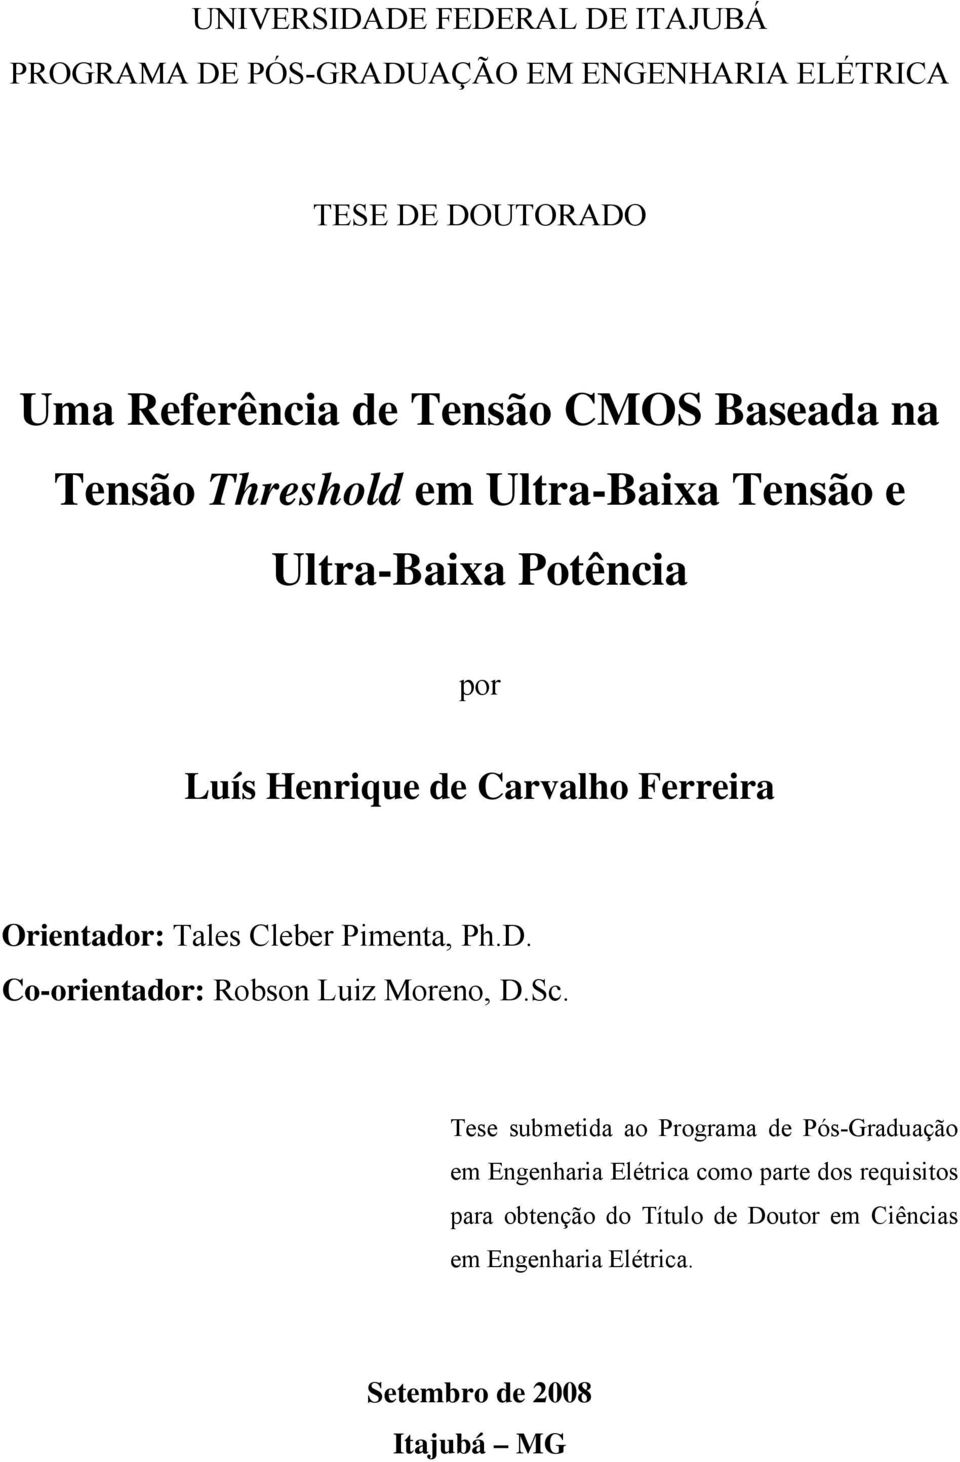 Orientador: Tales Cleber Pimenta, Ph.D. Co-orientador: Robson Luiz Moreno, D.Sc.